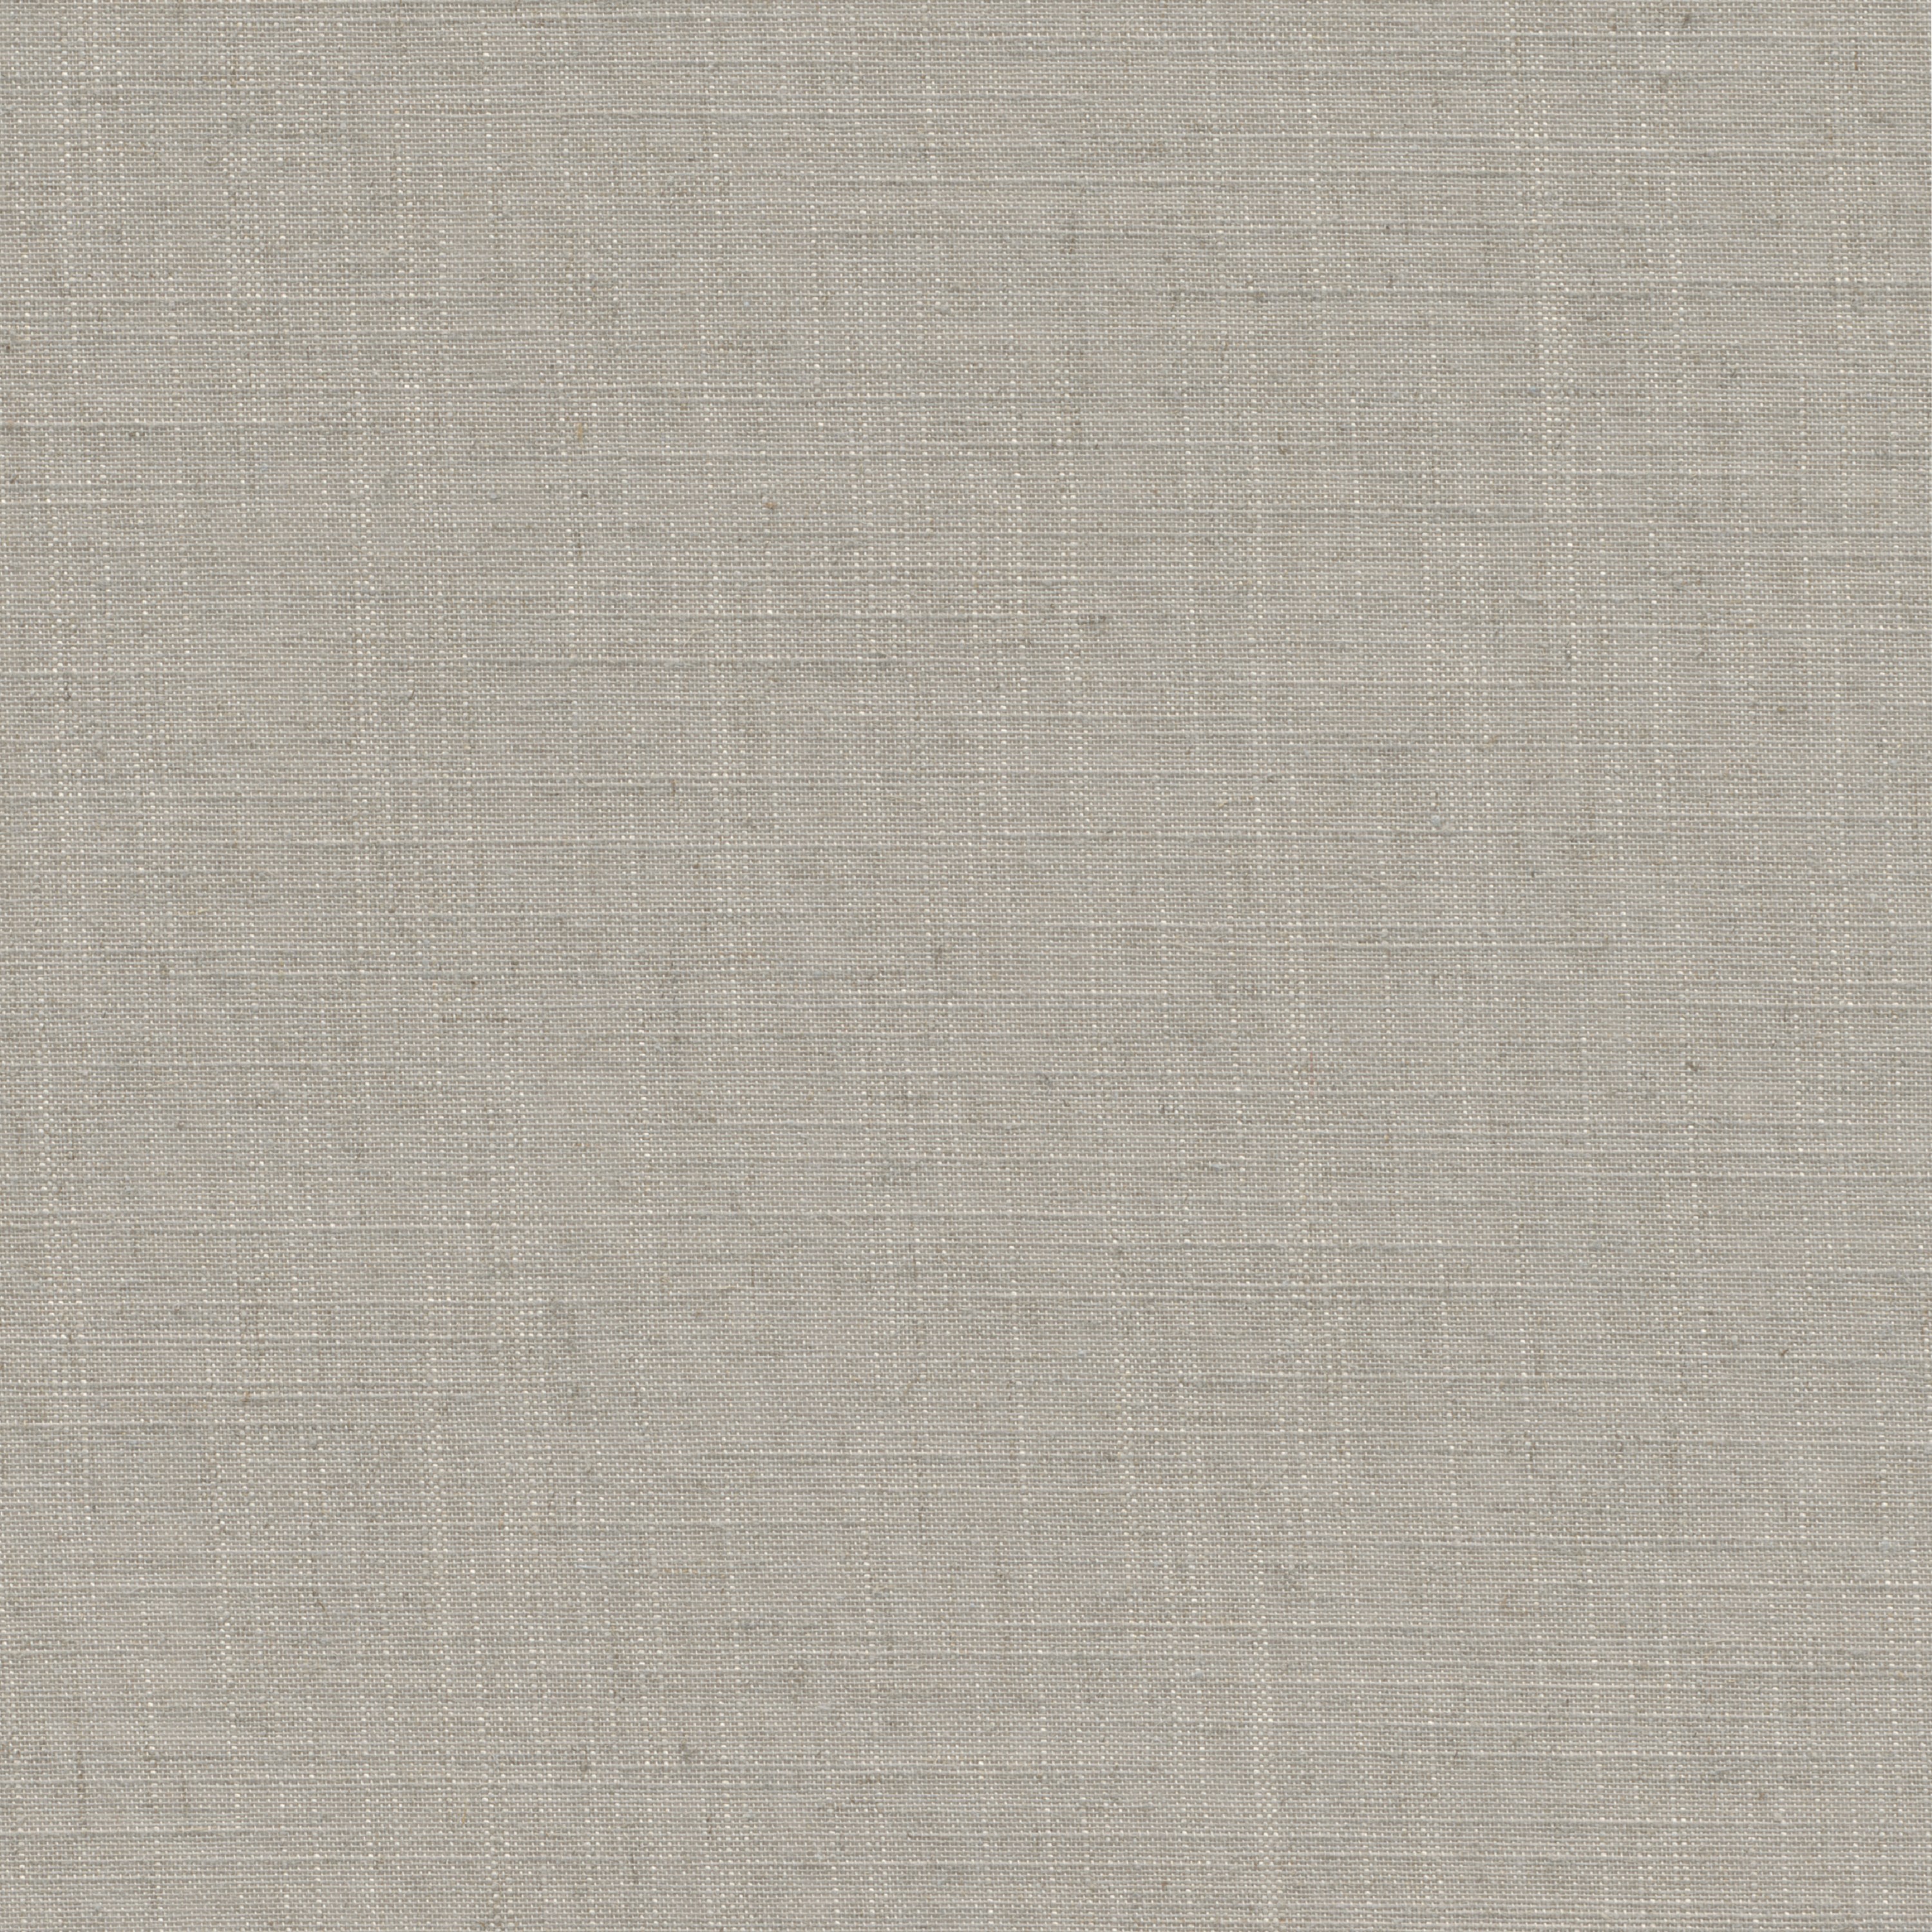 Tessuto per tende a rullo filtrante INSPIRE Brisbane beige 42 x 190 cm - 4